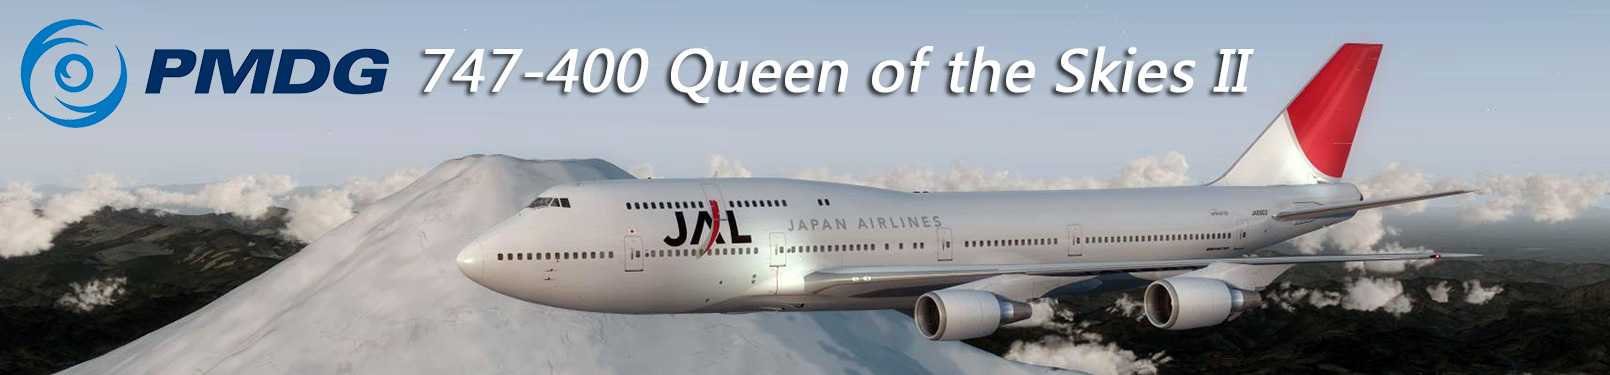 PMDG 747-400 Queen of the Skies II Review